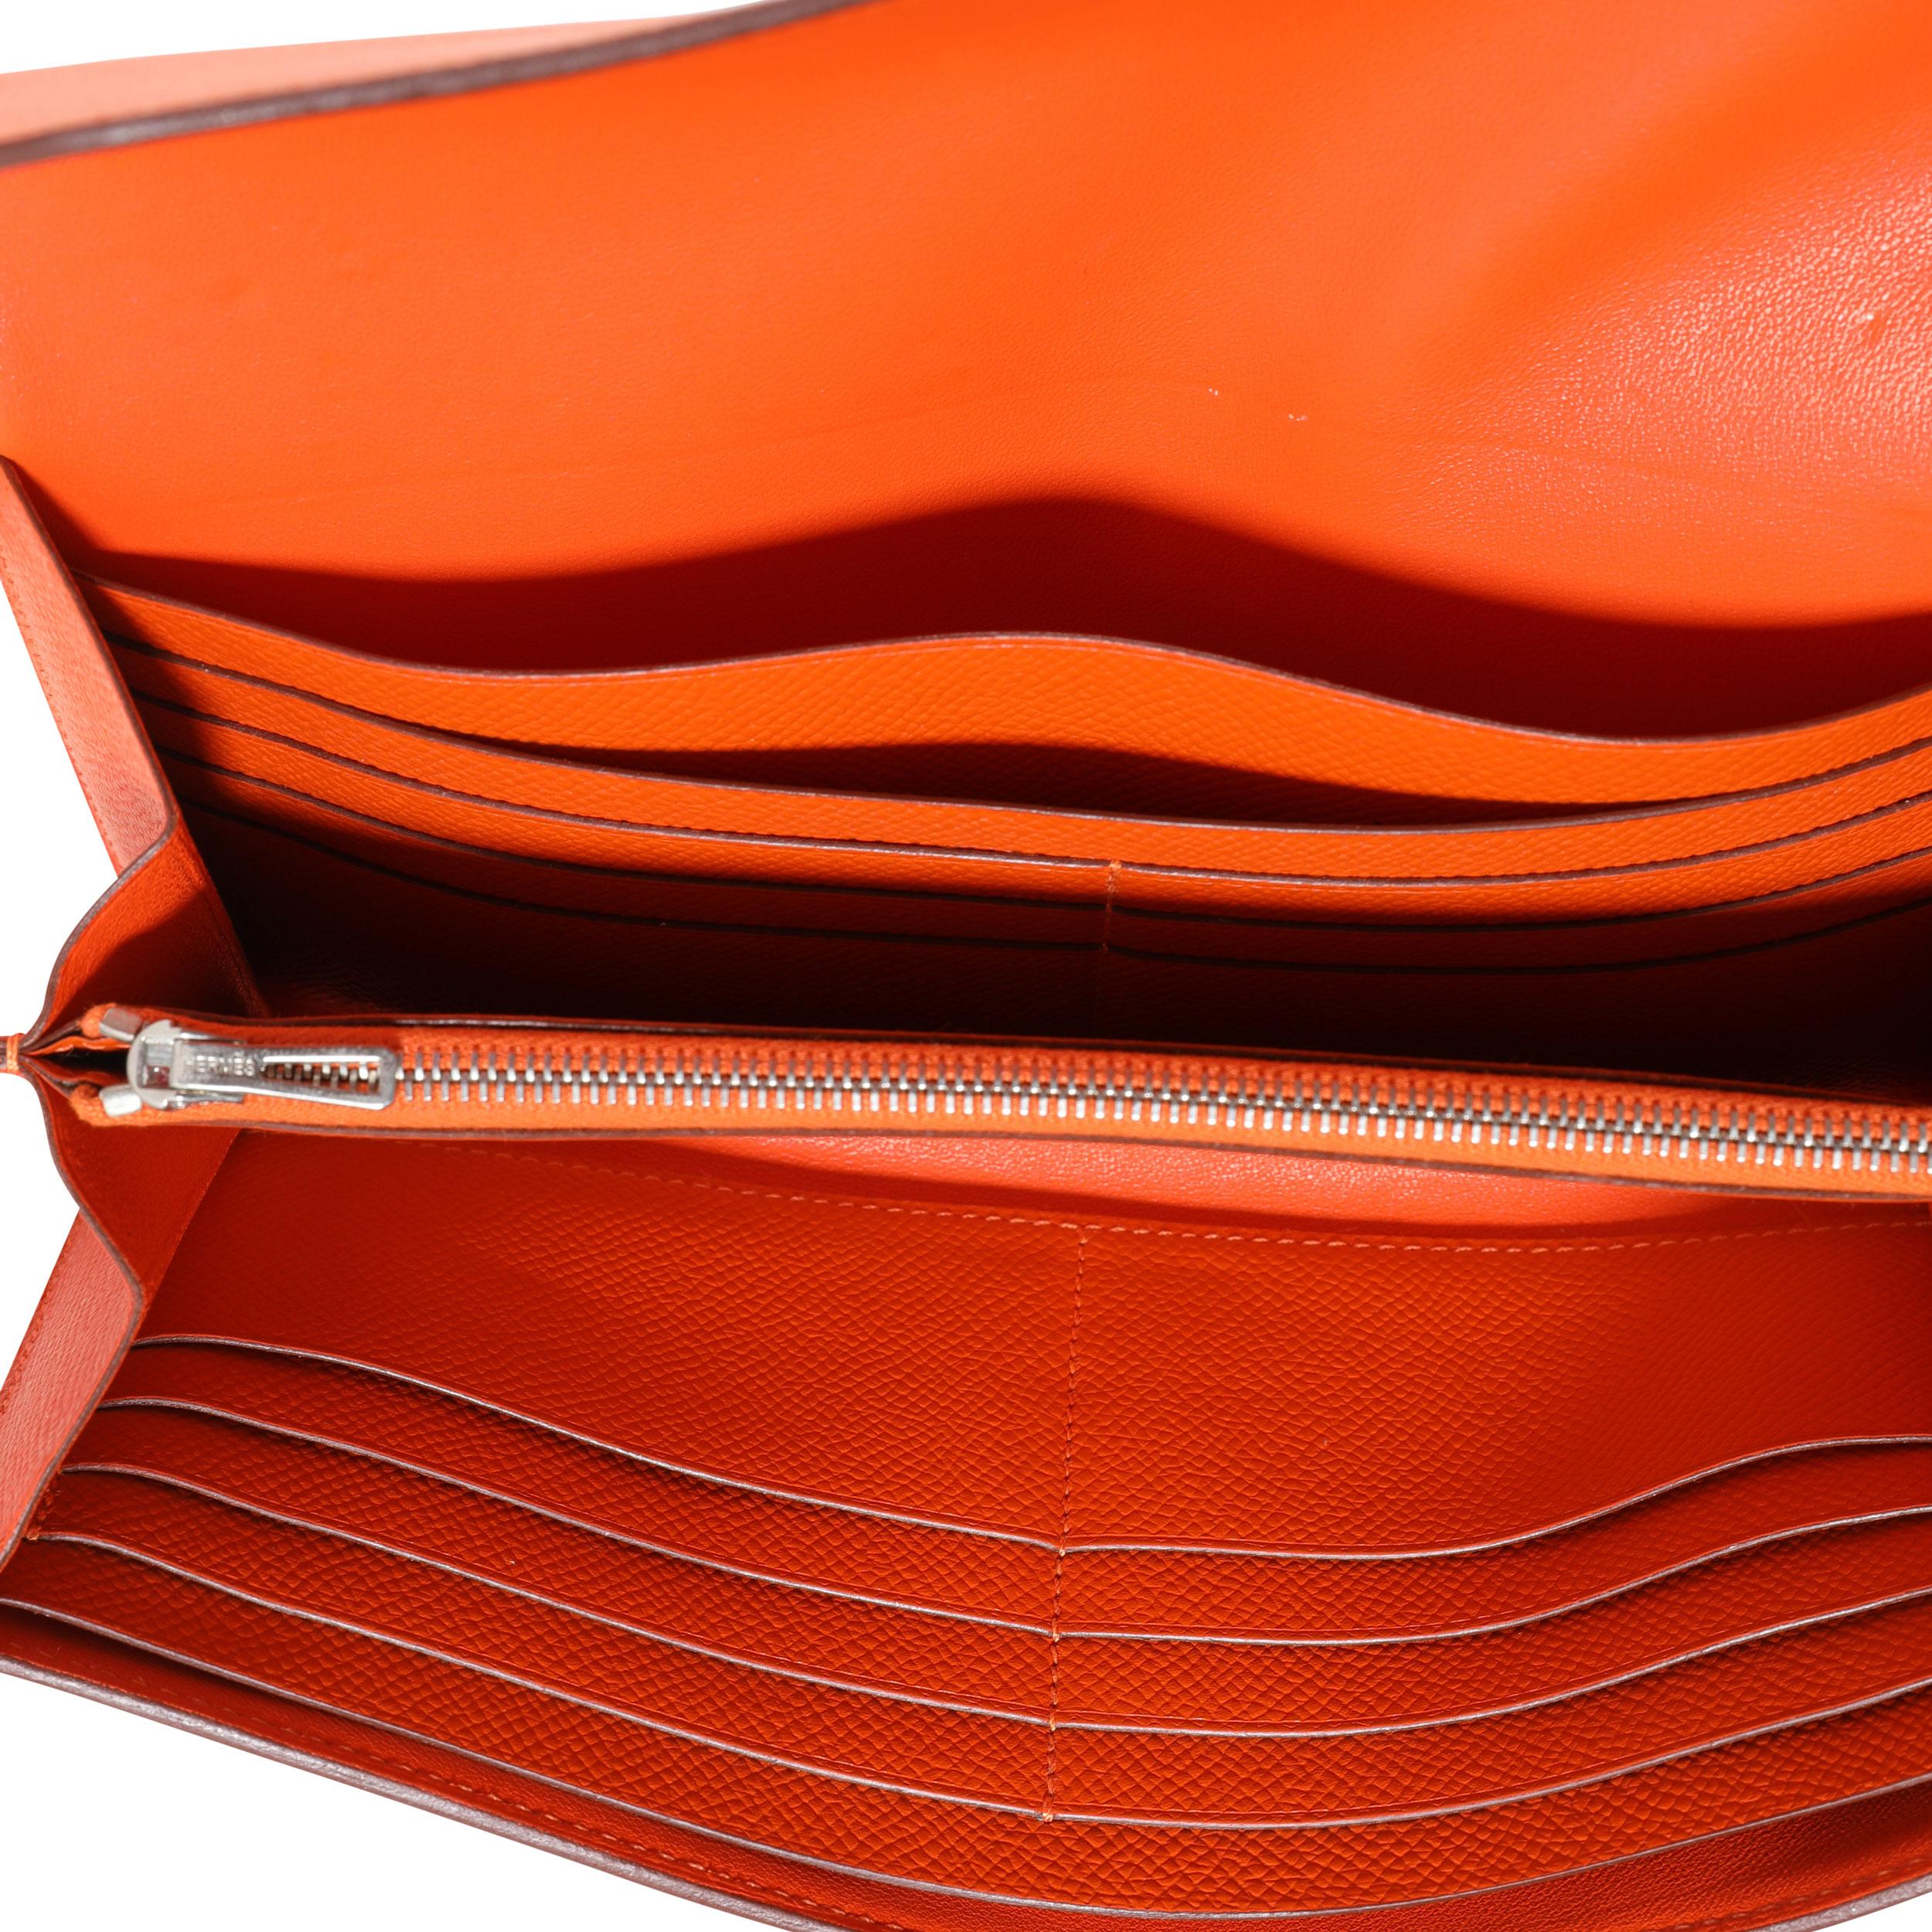 orange hermes wallet